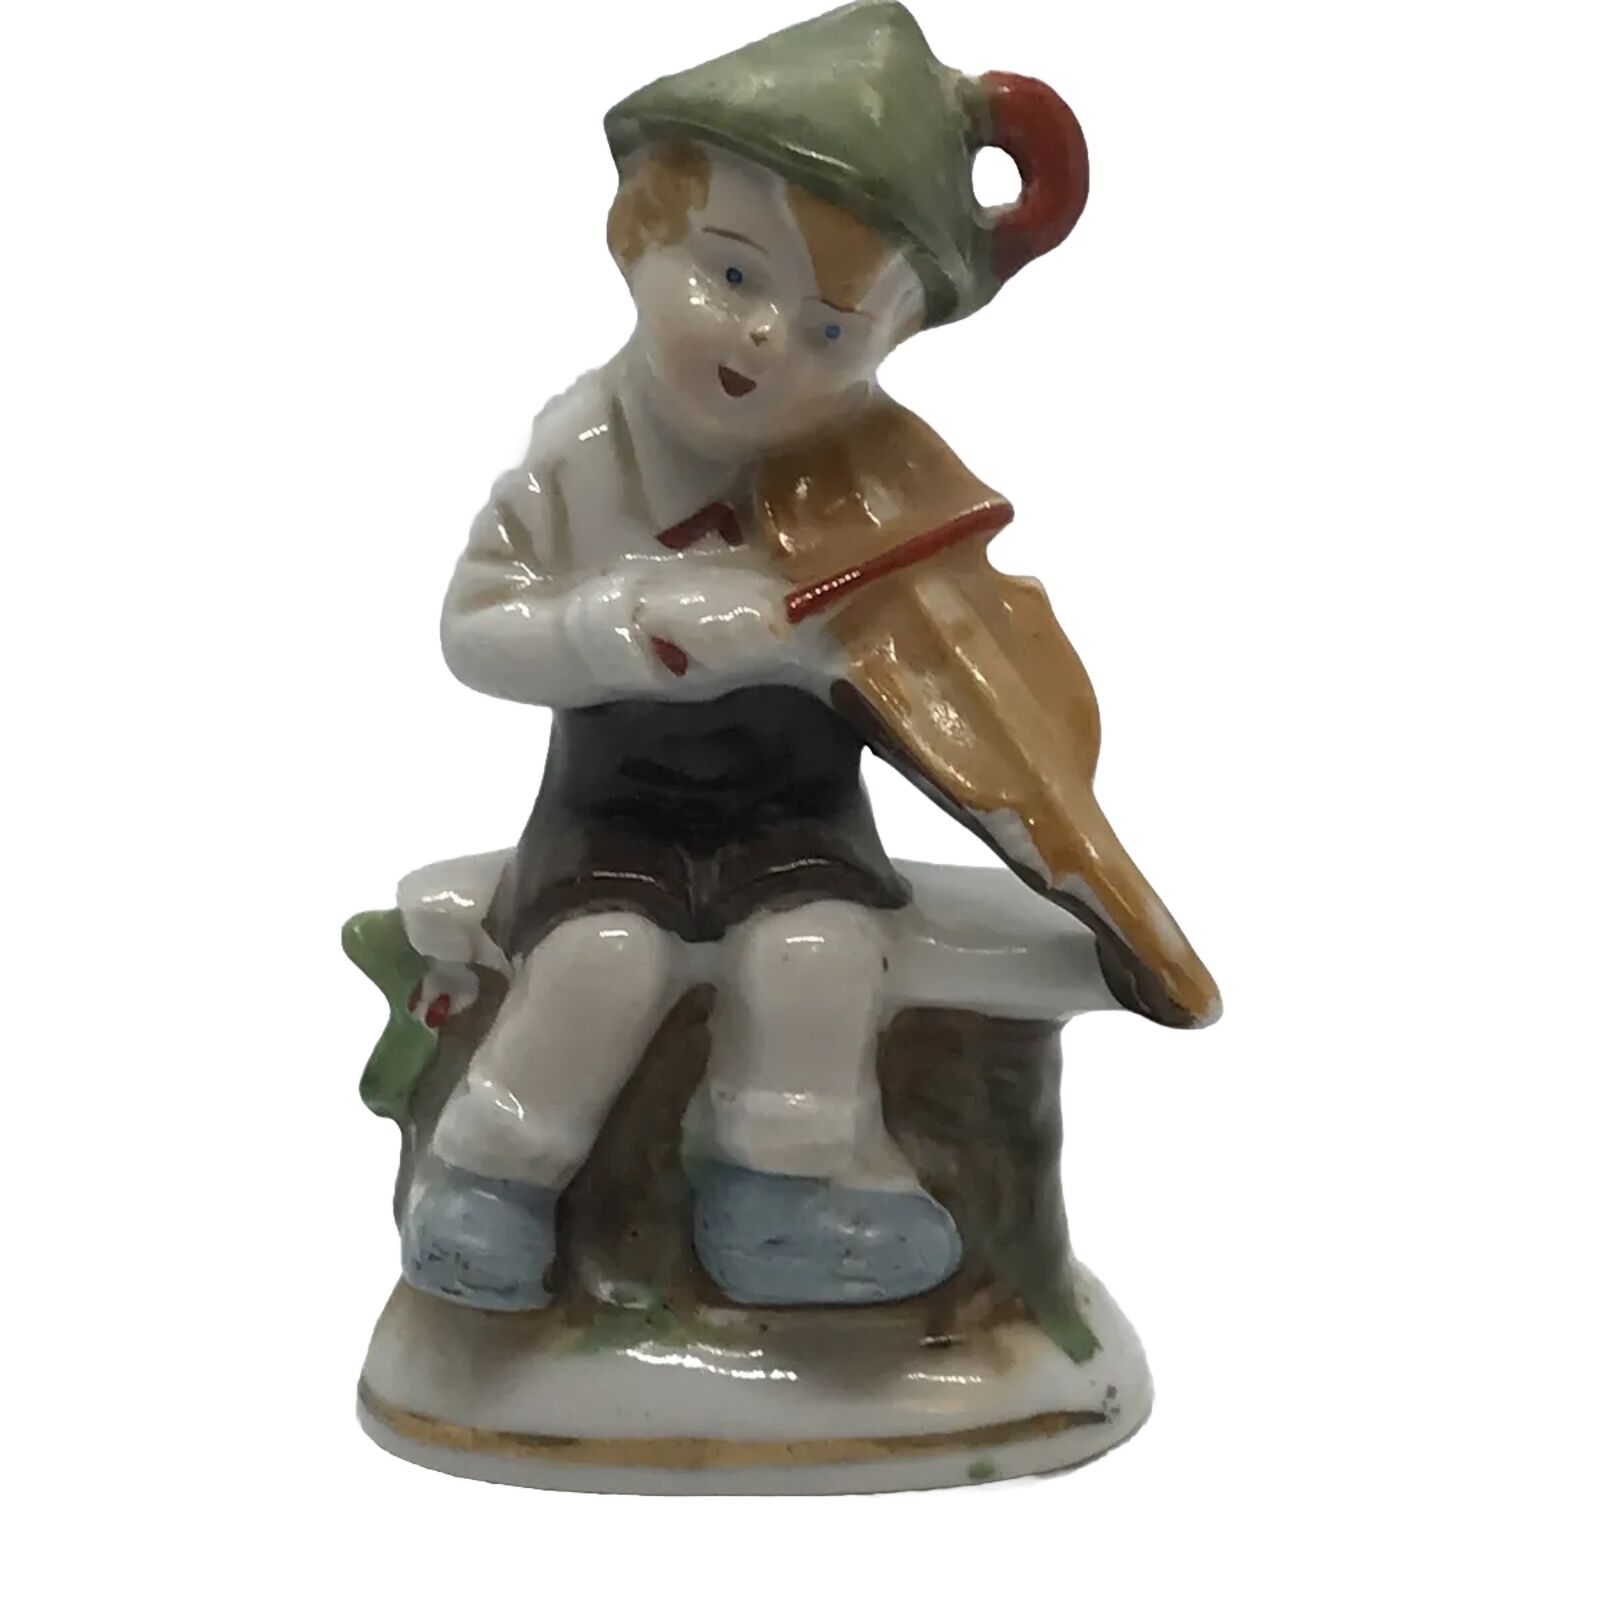 Bavarian German Boy Figurine Playing Violin Made In Japan Porcelain Glass VTG